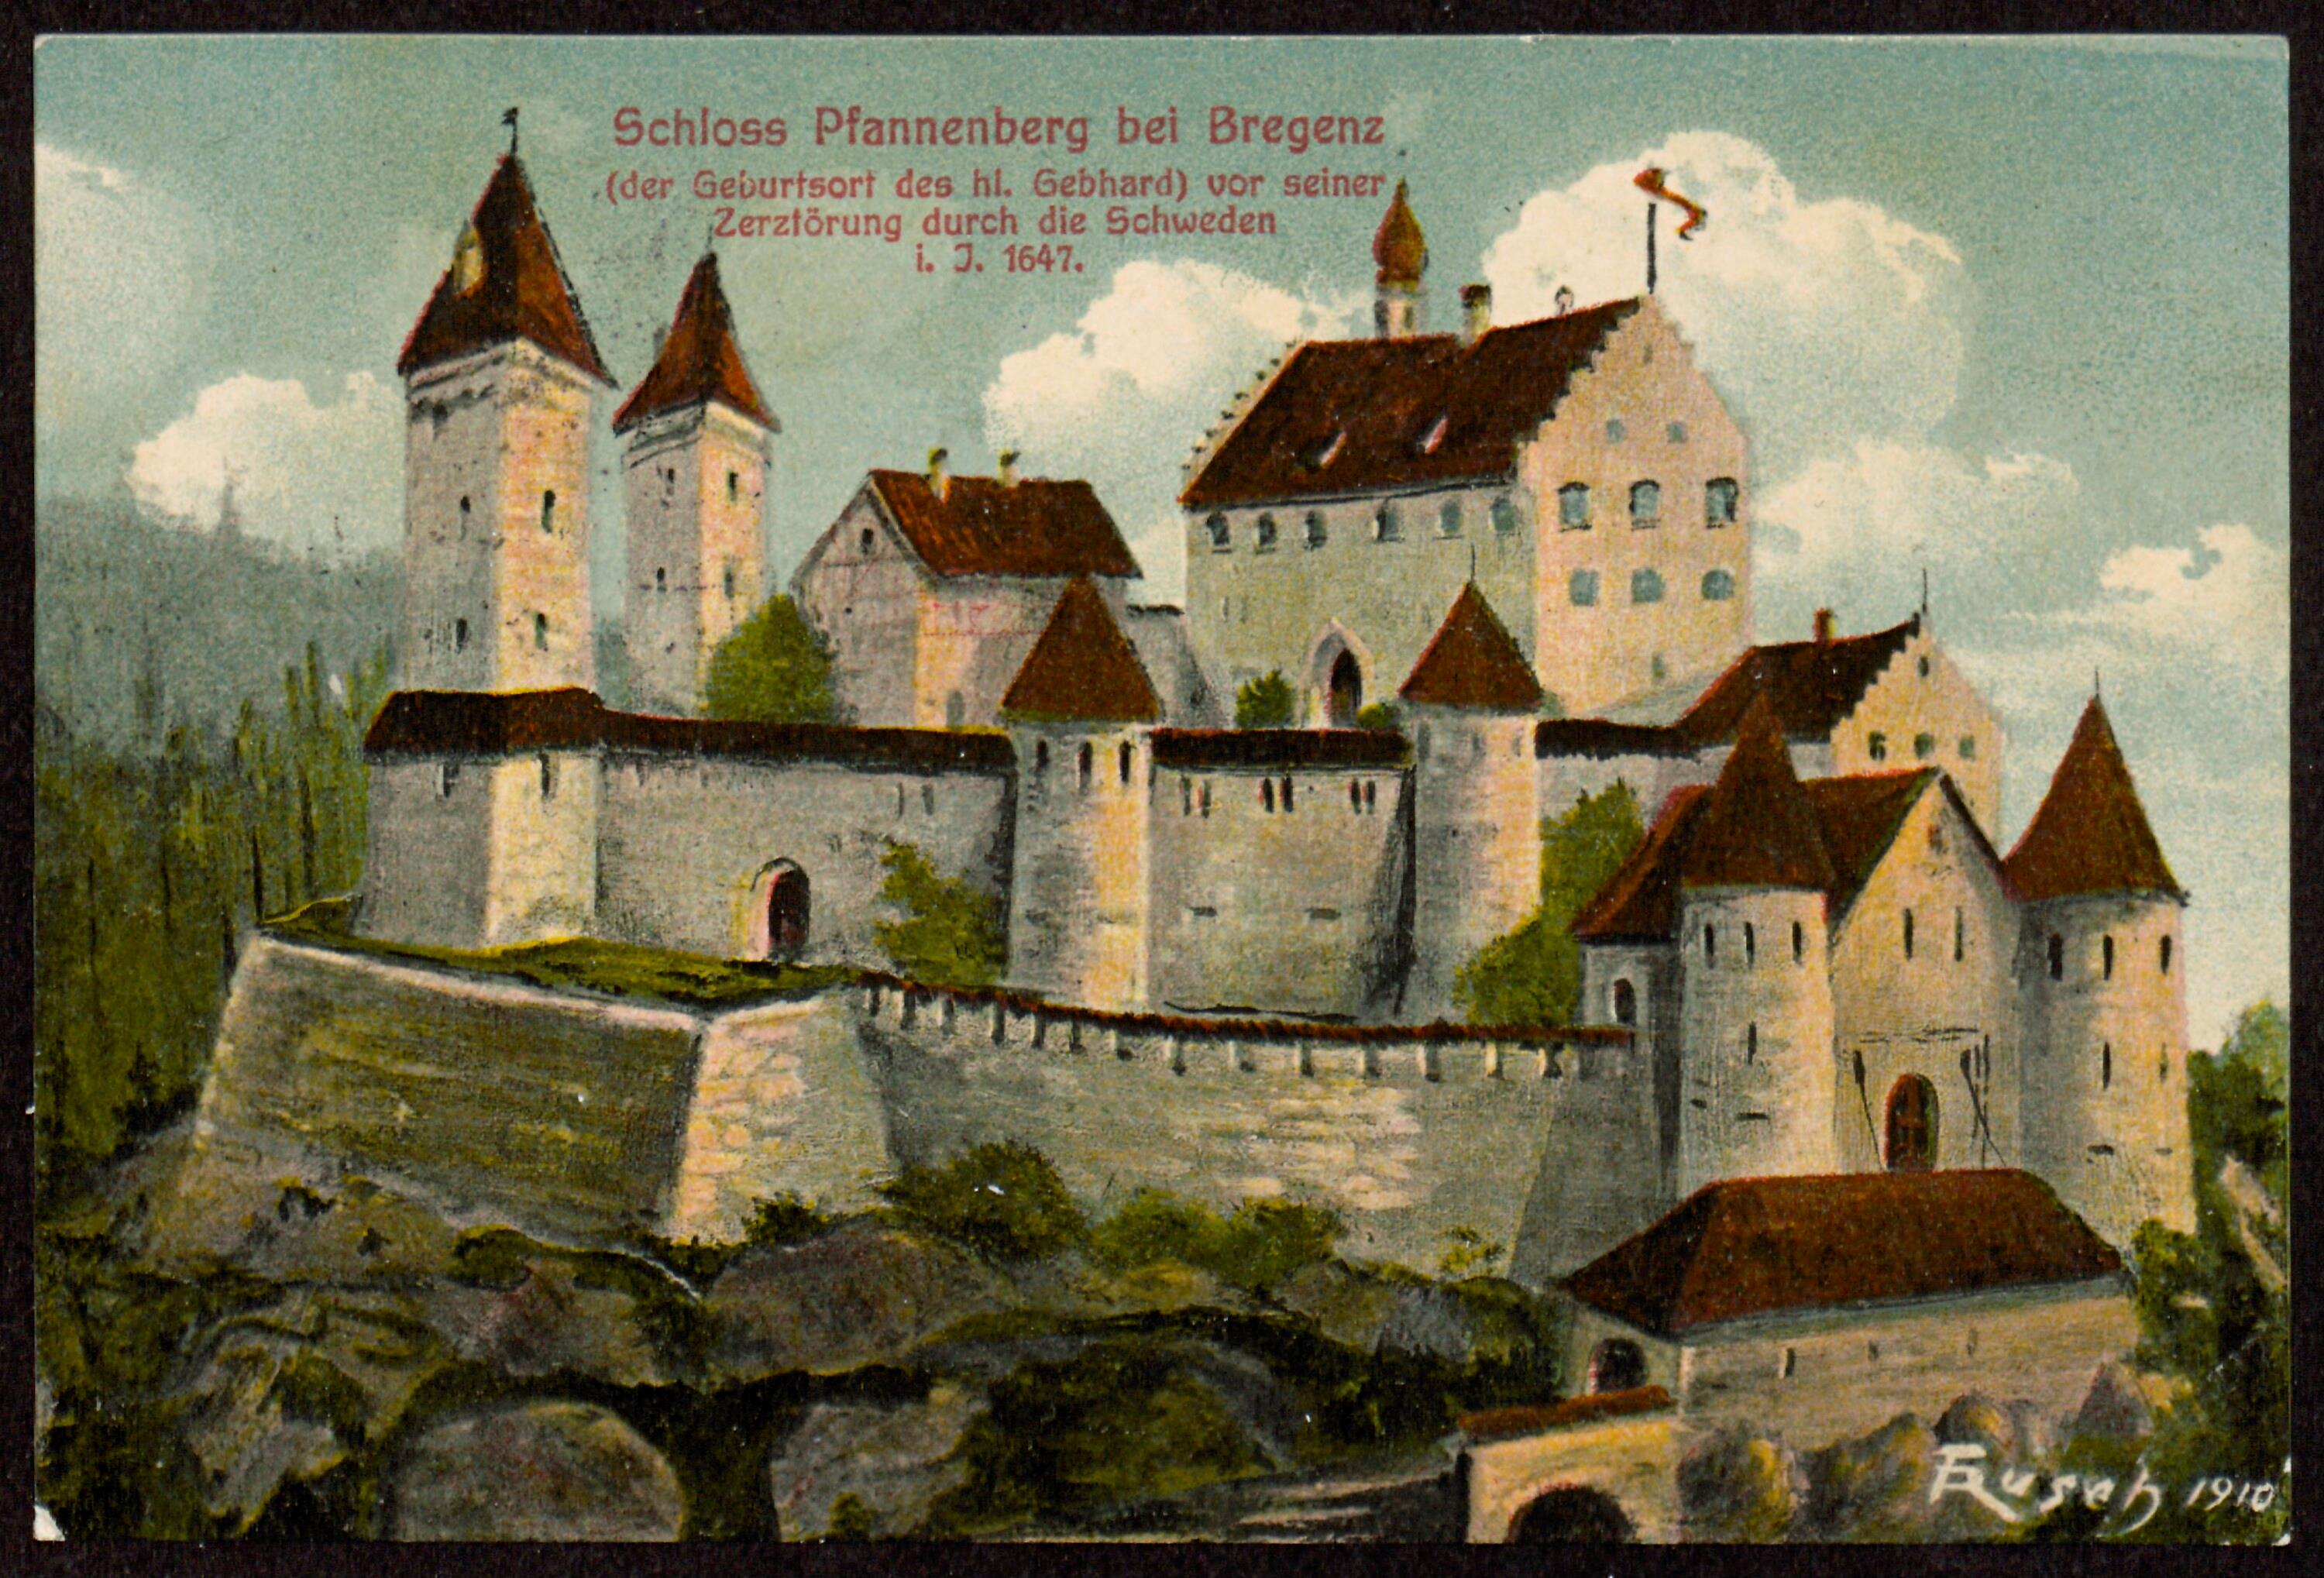 Schloss Pfannenberg bei Bregenz (der Geburtsort des hl. Gebhard) vor seiner Zerstörung durch die Schweden i. J. 1647></div>


    <hr>
    <div class=